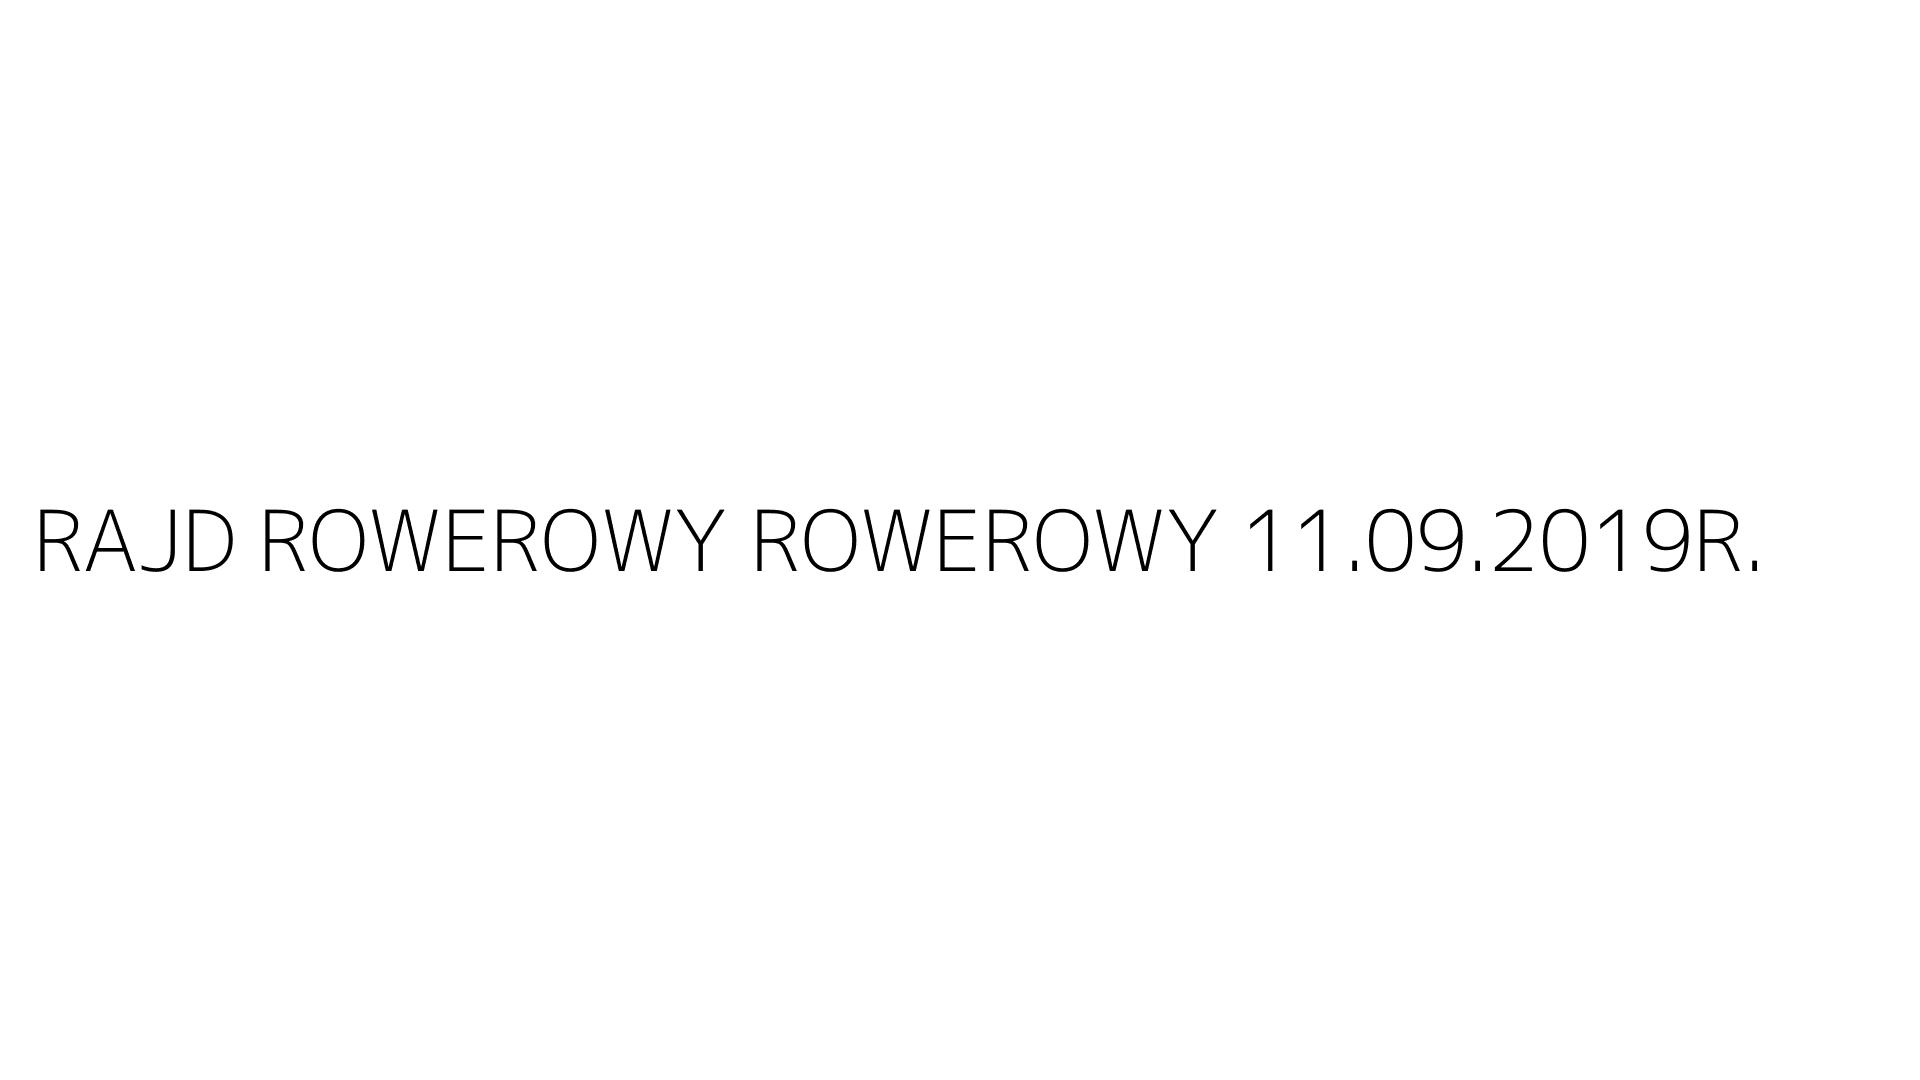 RAJD ROWEROWY ROWEROWY 11.09.2019R.